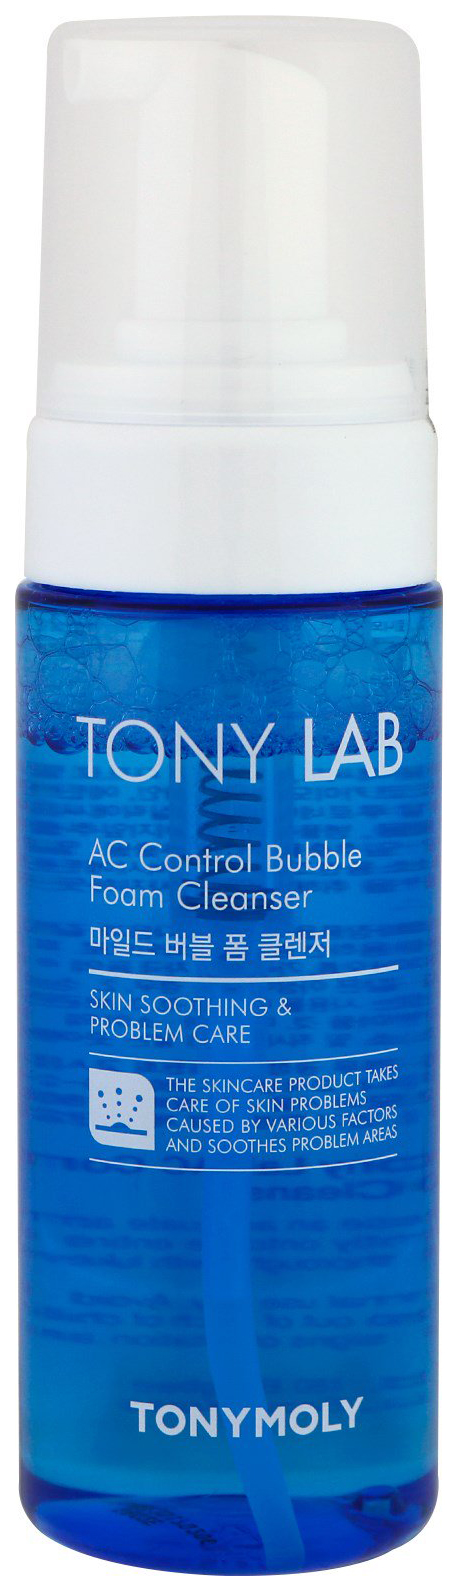 фото Пенка для умывания tony moly tony lab ac control bubble foam cleanser 150 мл